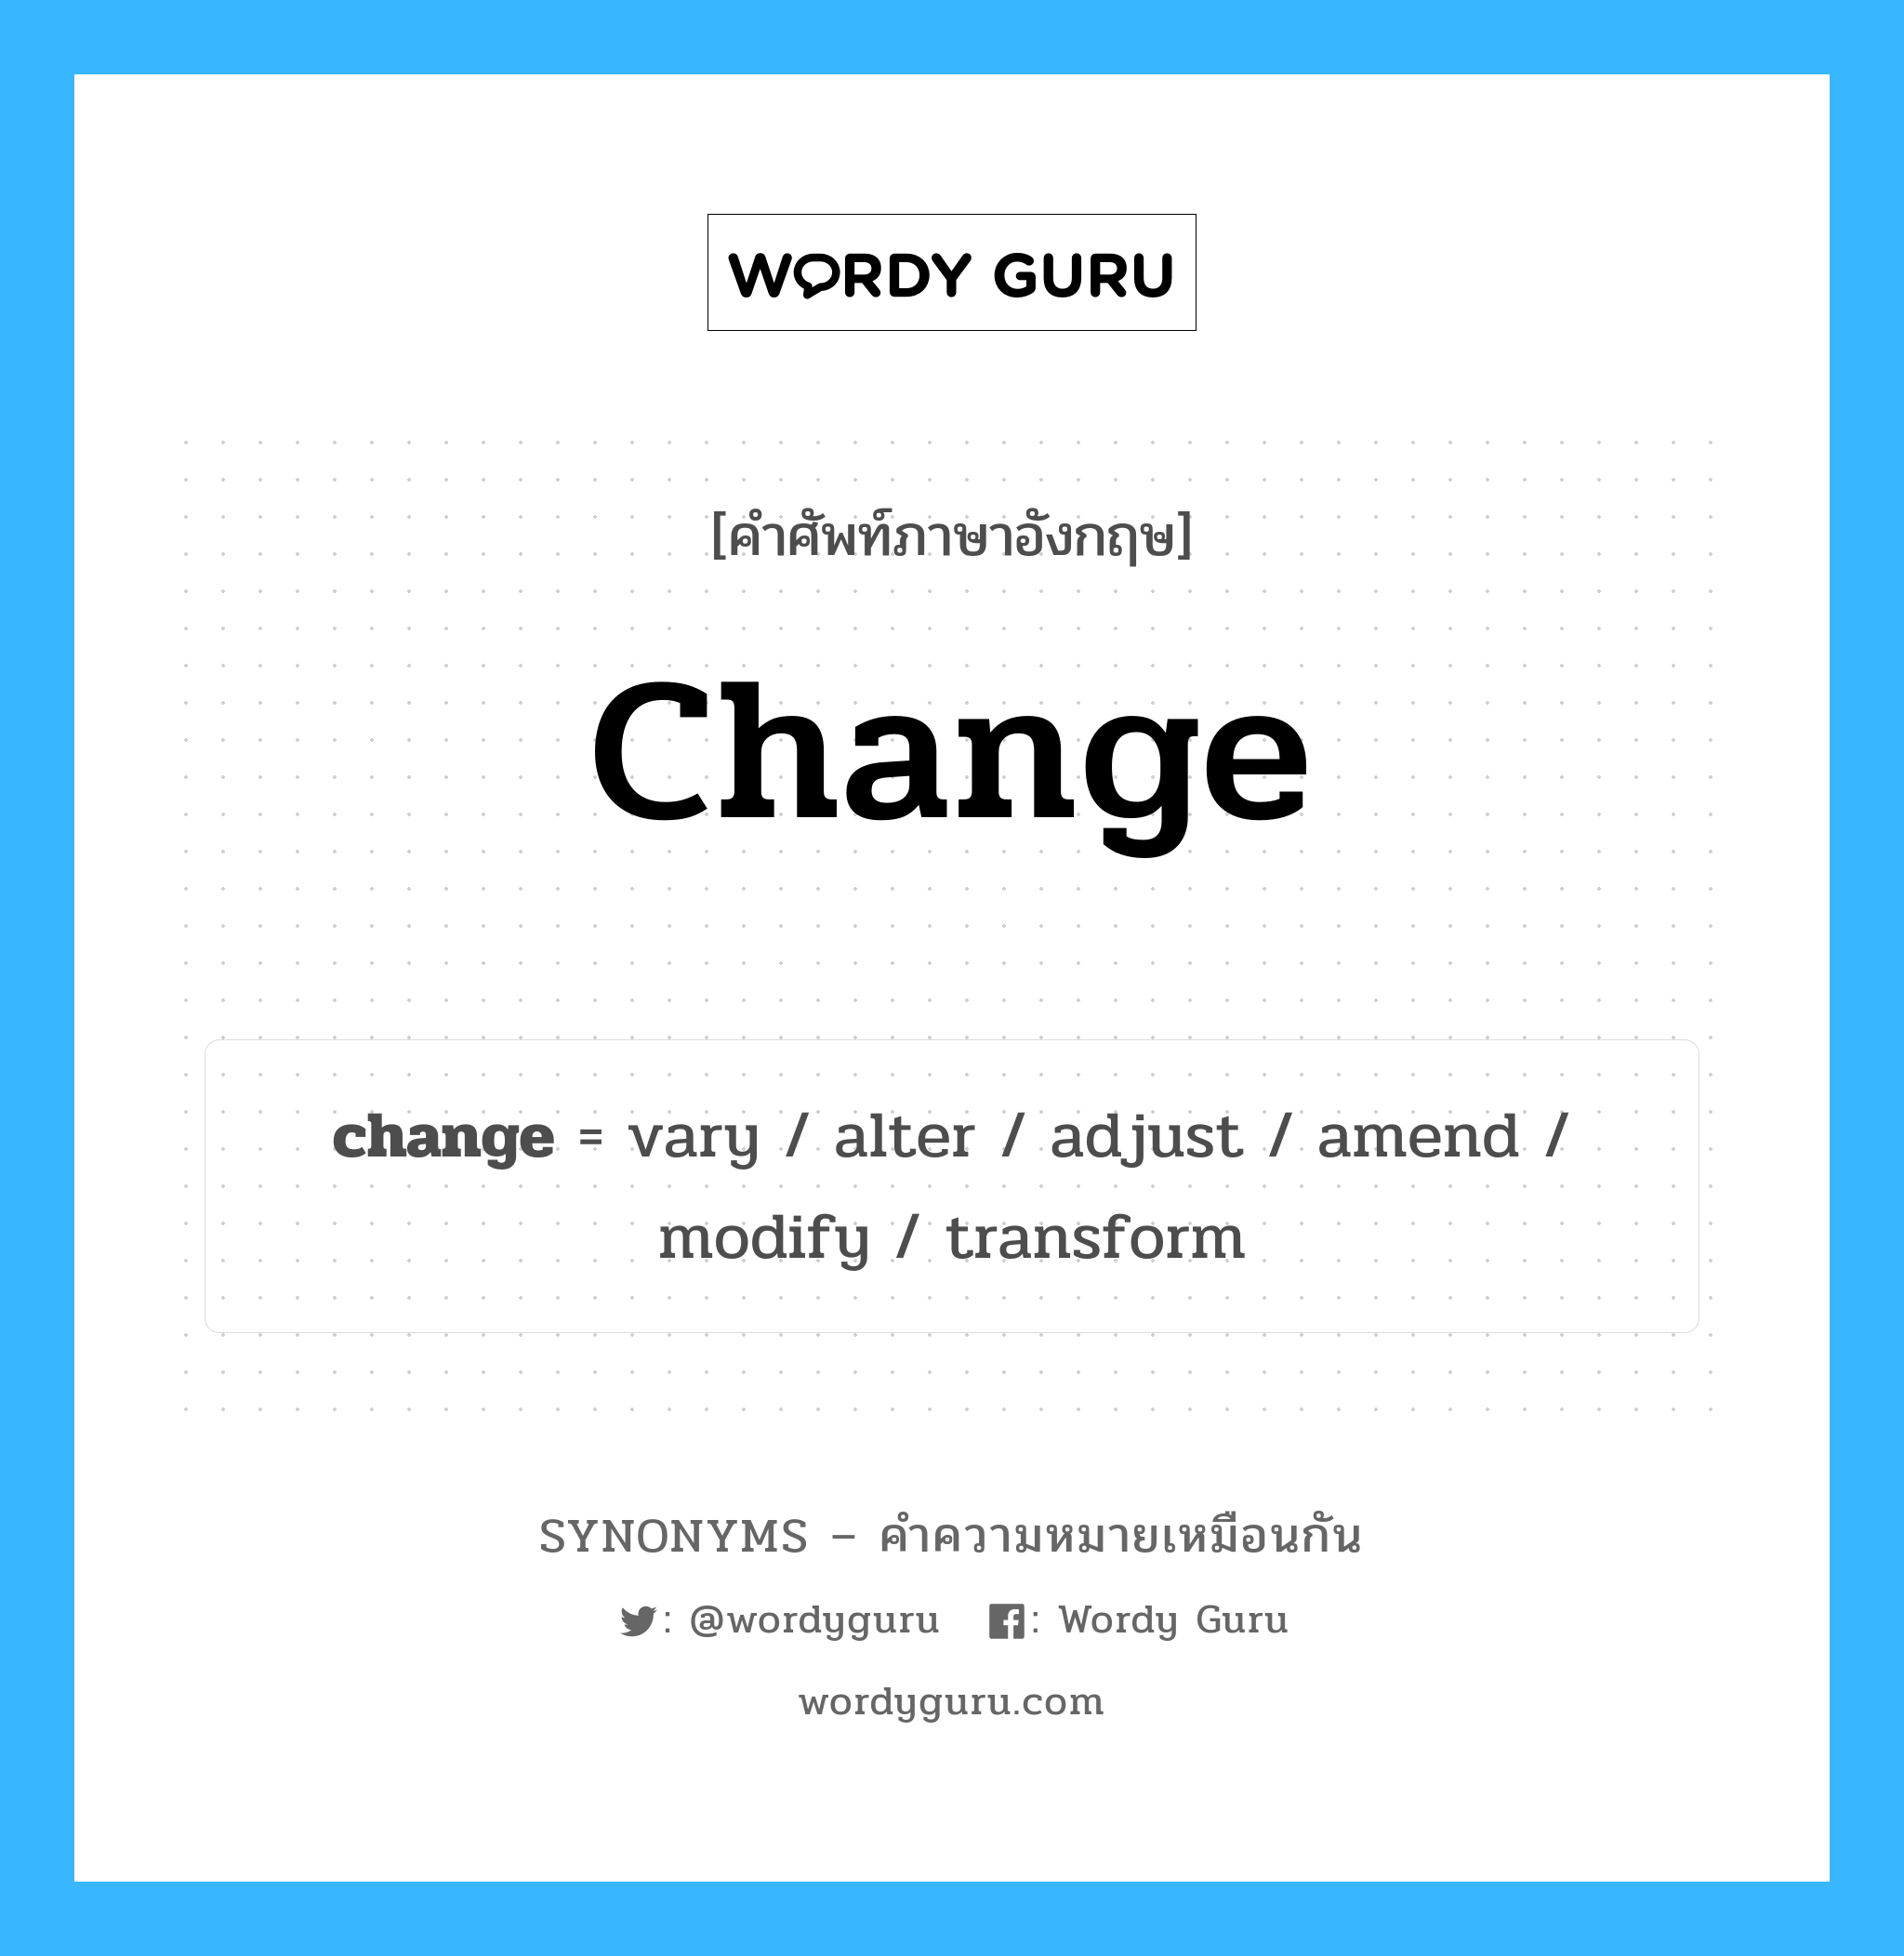 vary เป็นหนึ่งใน change และมีคำอื่น ๆ อีกดังนี้, คำศัพท์ภาษาอังกฤษ vary ความหมายคล้ายกันกับ change แปลว่า แตกต่างกันไป หมวด change